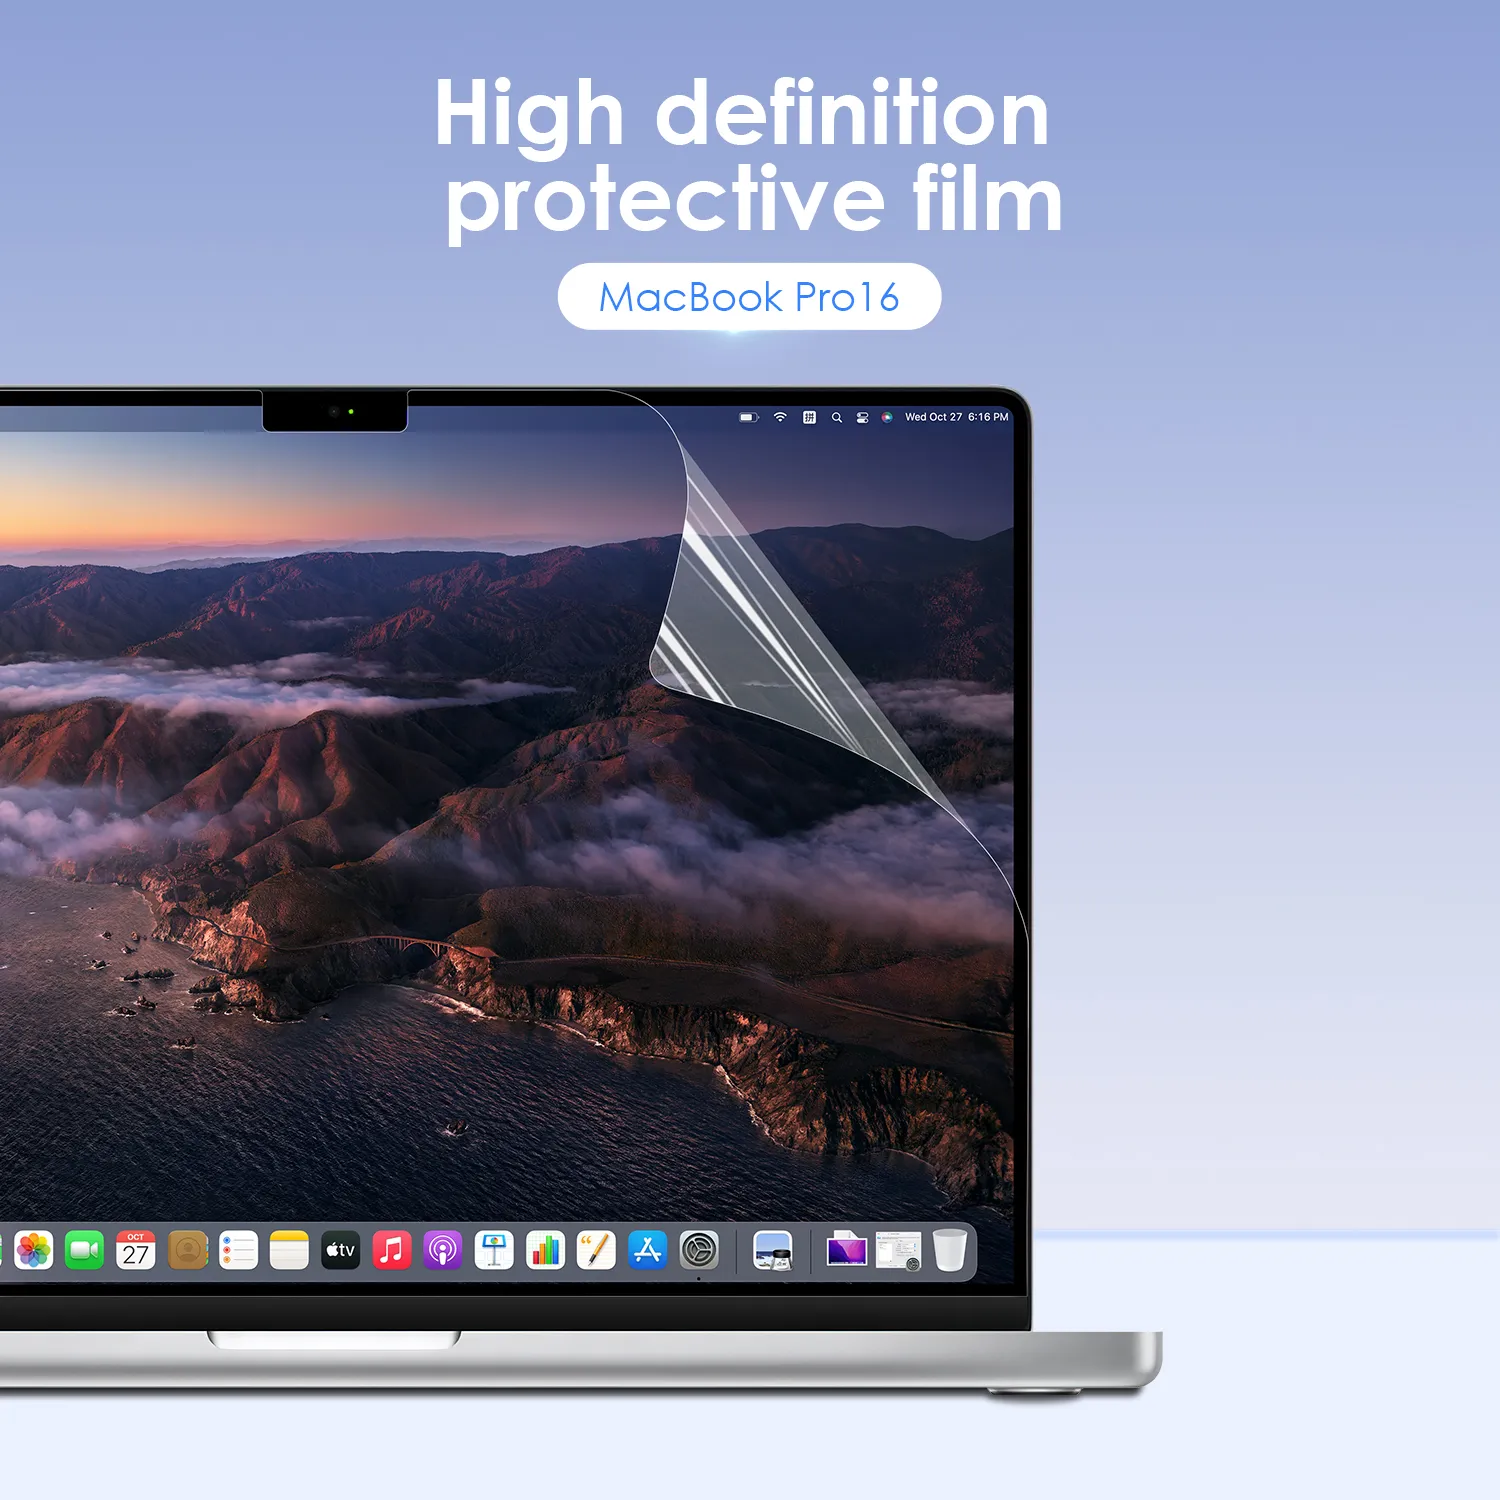 Защитная пленка LENTION для MacBook Pro (16 дюймов, с портами Thunderbolt 3) с сенсорной панелью (2019 г.), прозрачная защитная пленка HD с гидрофобным олеофобным покрытием